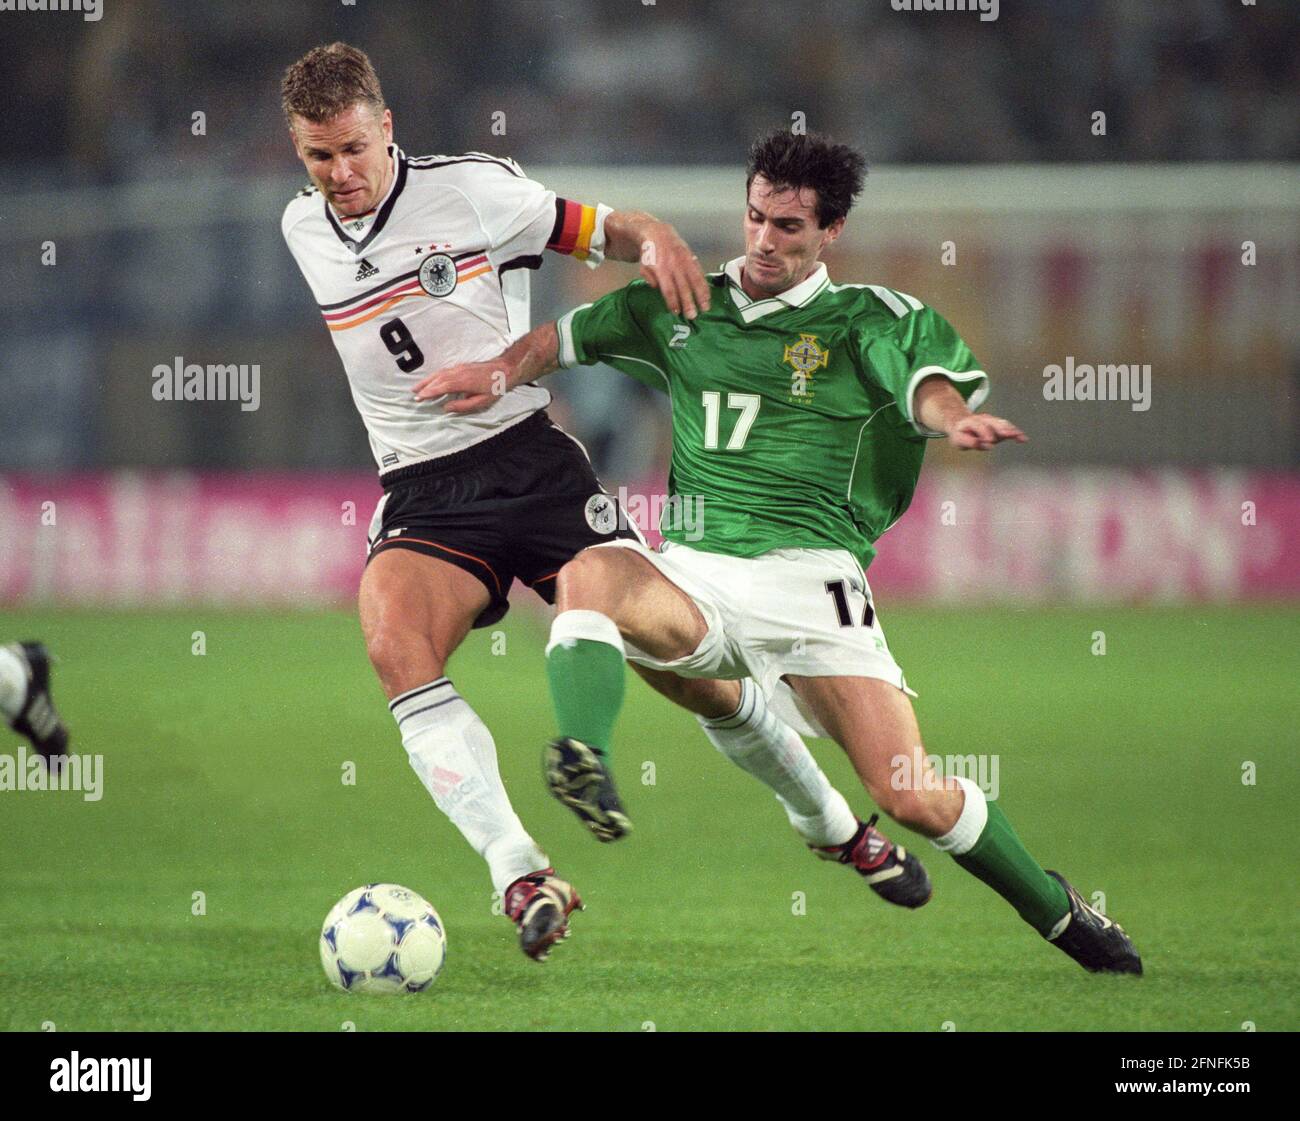 Campionato europeo di qualificazione : Germania - Irlanda del Nord 4:0/08.09.1999 a Dortmund. Oliver Bierhoff (Germania/Irlanda del Nord) in duello con Keith Gillespie (Irlanda del Nord). [traduzione automatizzata] Foto Stock